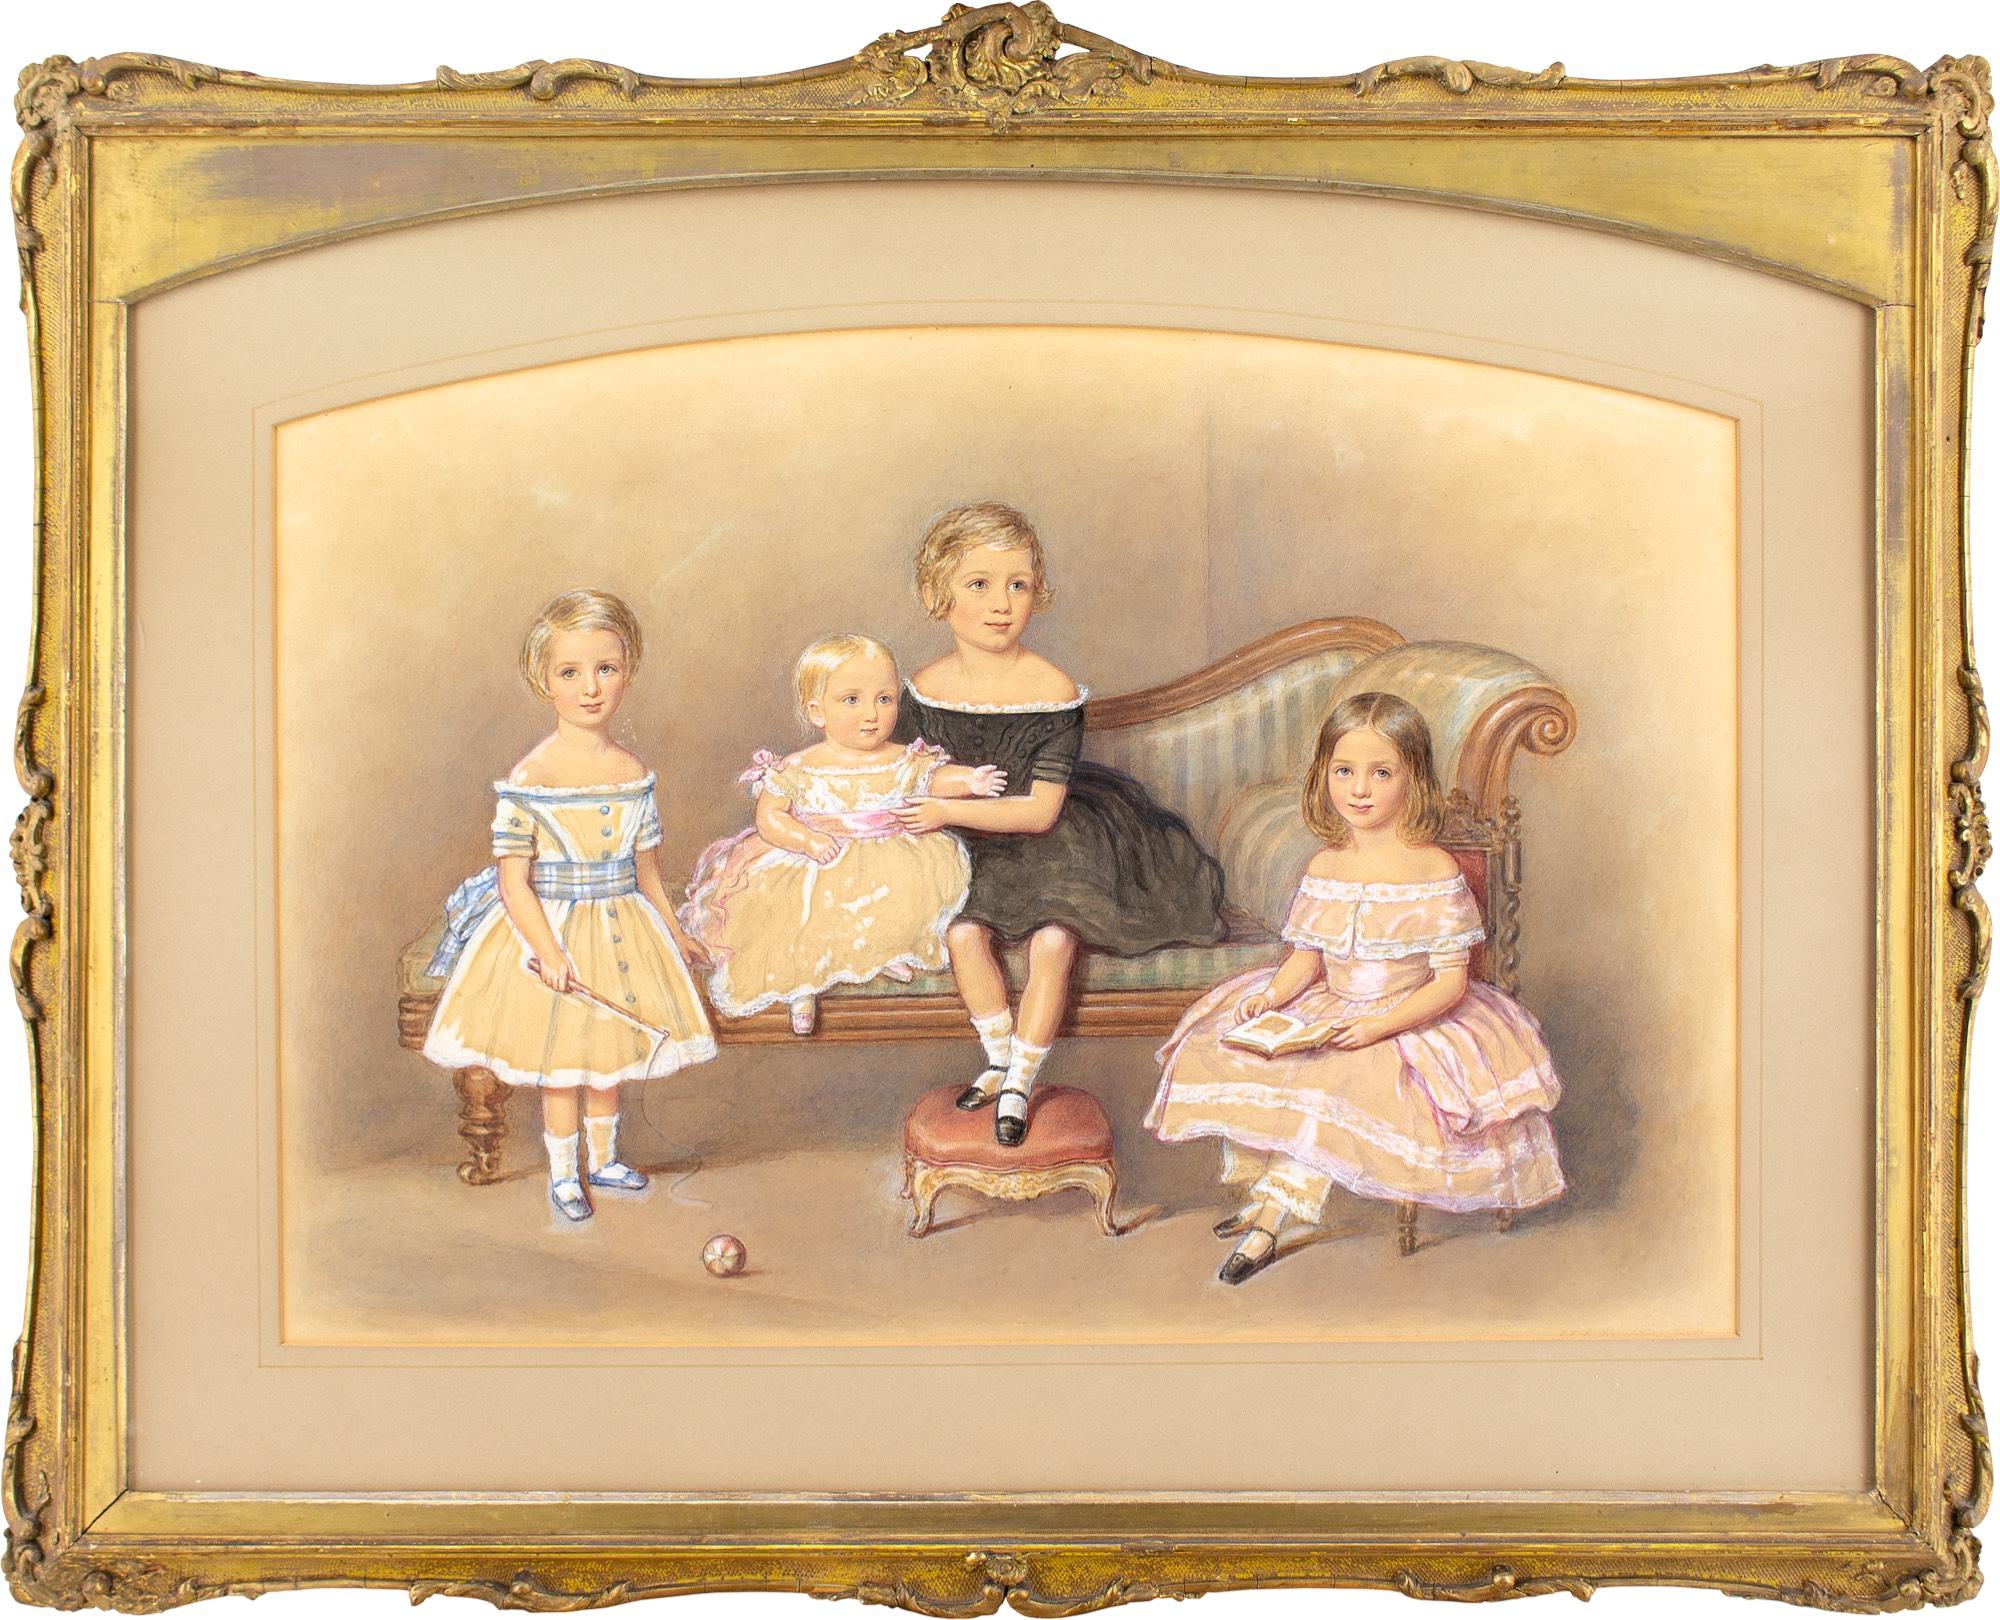 Dieses charmante Aquarell des britischen Künstlers John George Indermaur (1818-1862) aus der Mitte des 19. Jahrhunderts zeigt vier Kinder, eine Chaiselongue und einen Schemel. Es wurde 1847 in der Royal Society of British Artists gezeigt.

Elegant